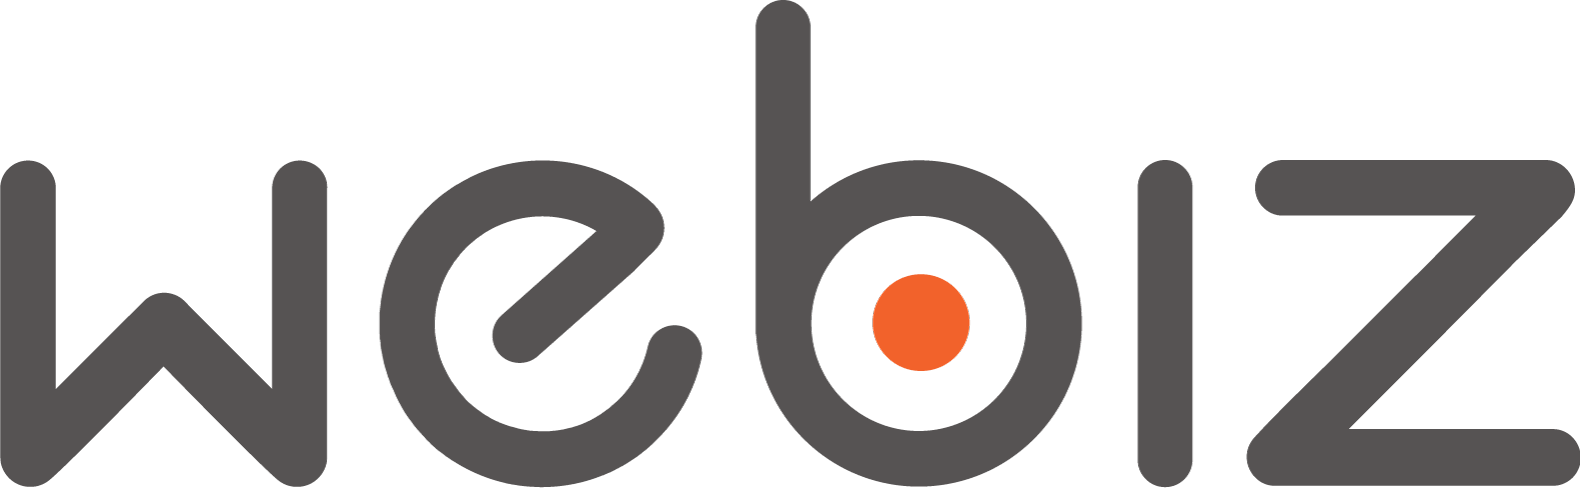 Webiz-Logo